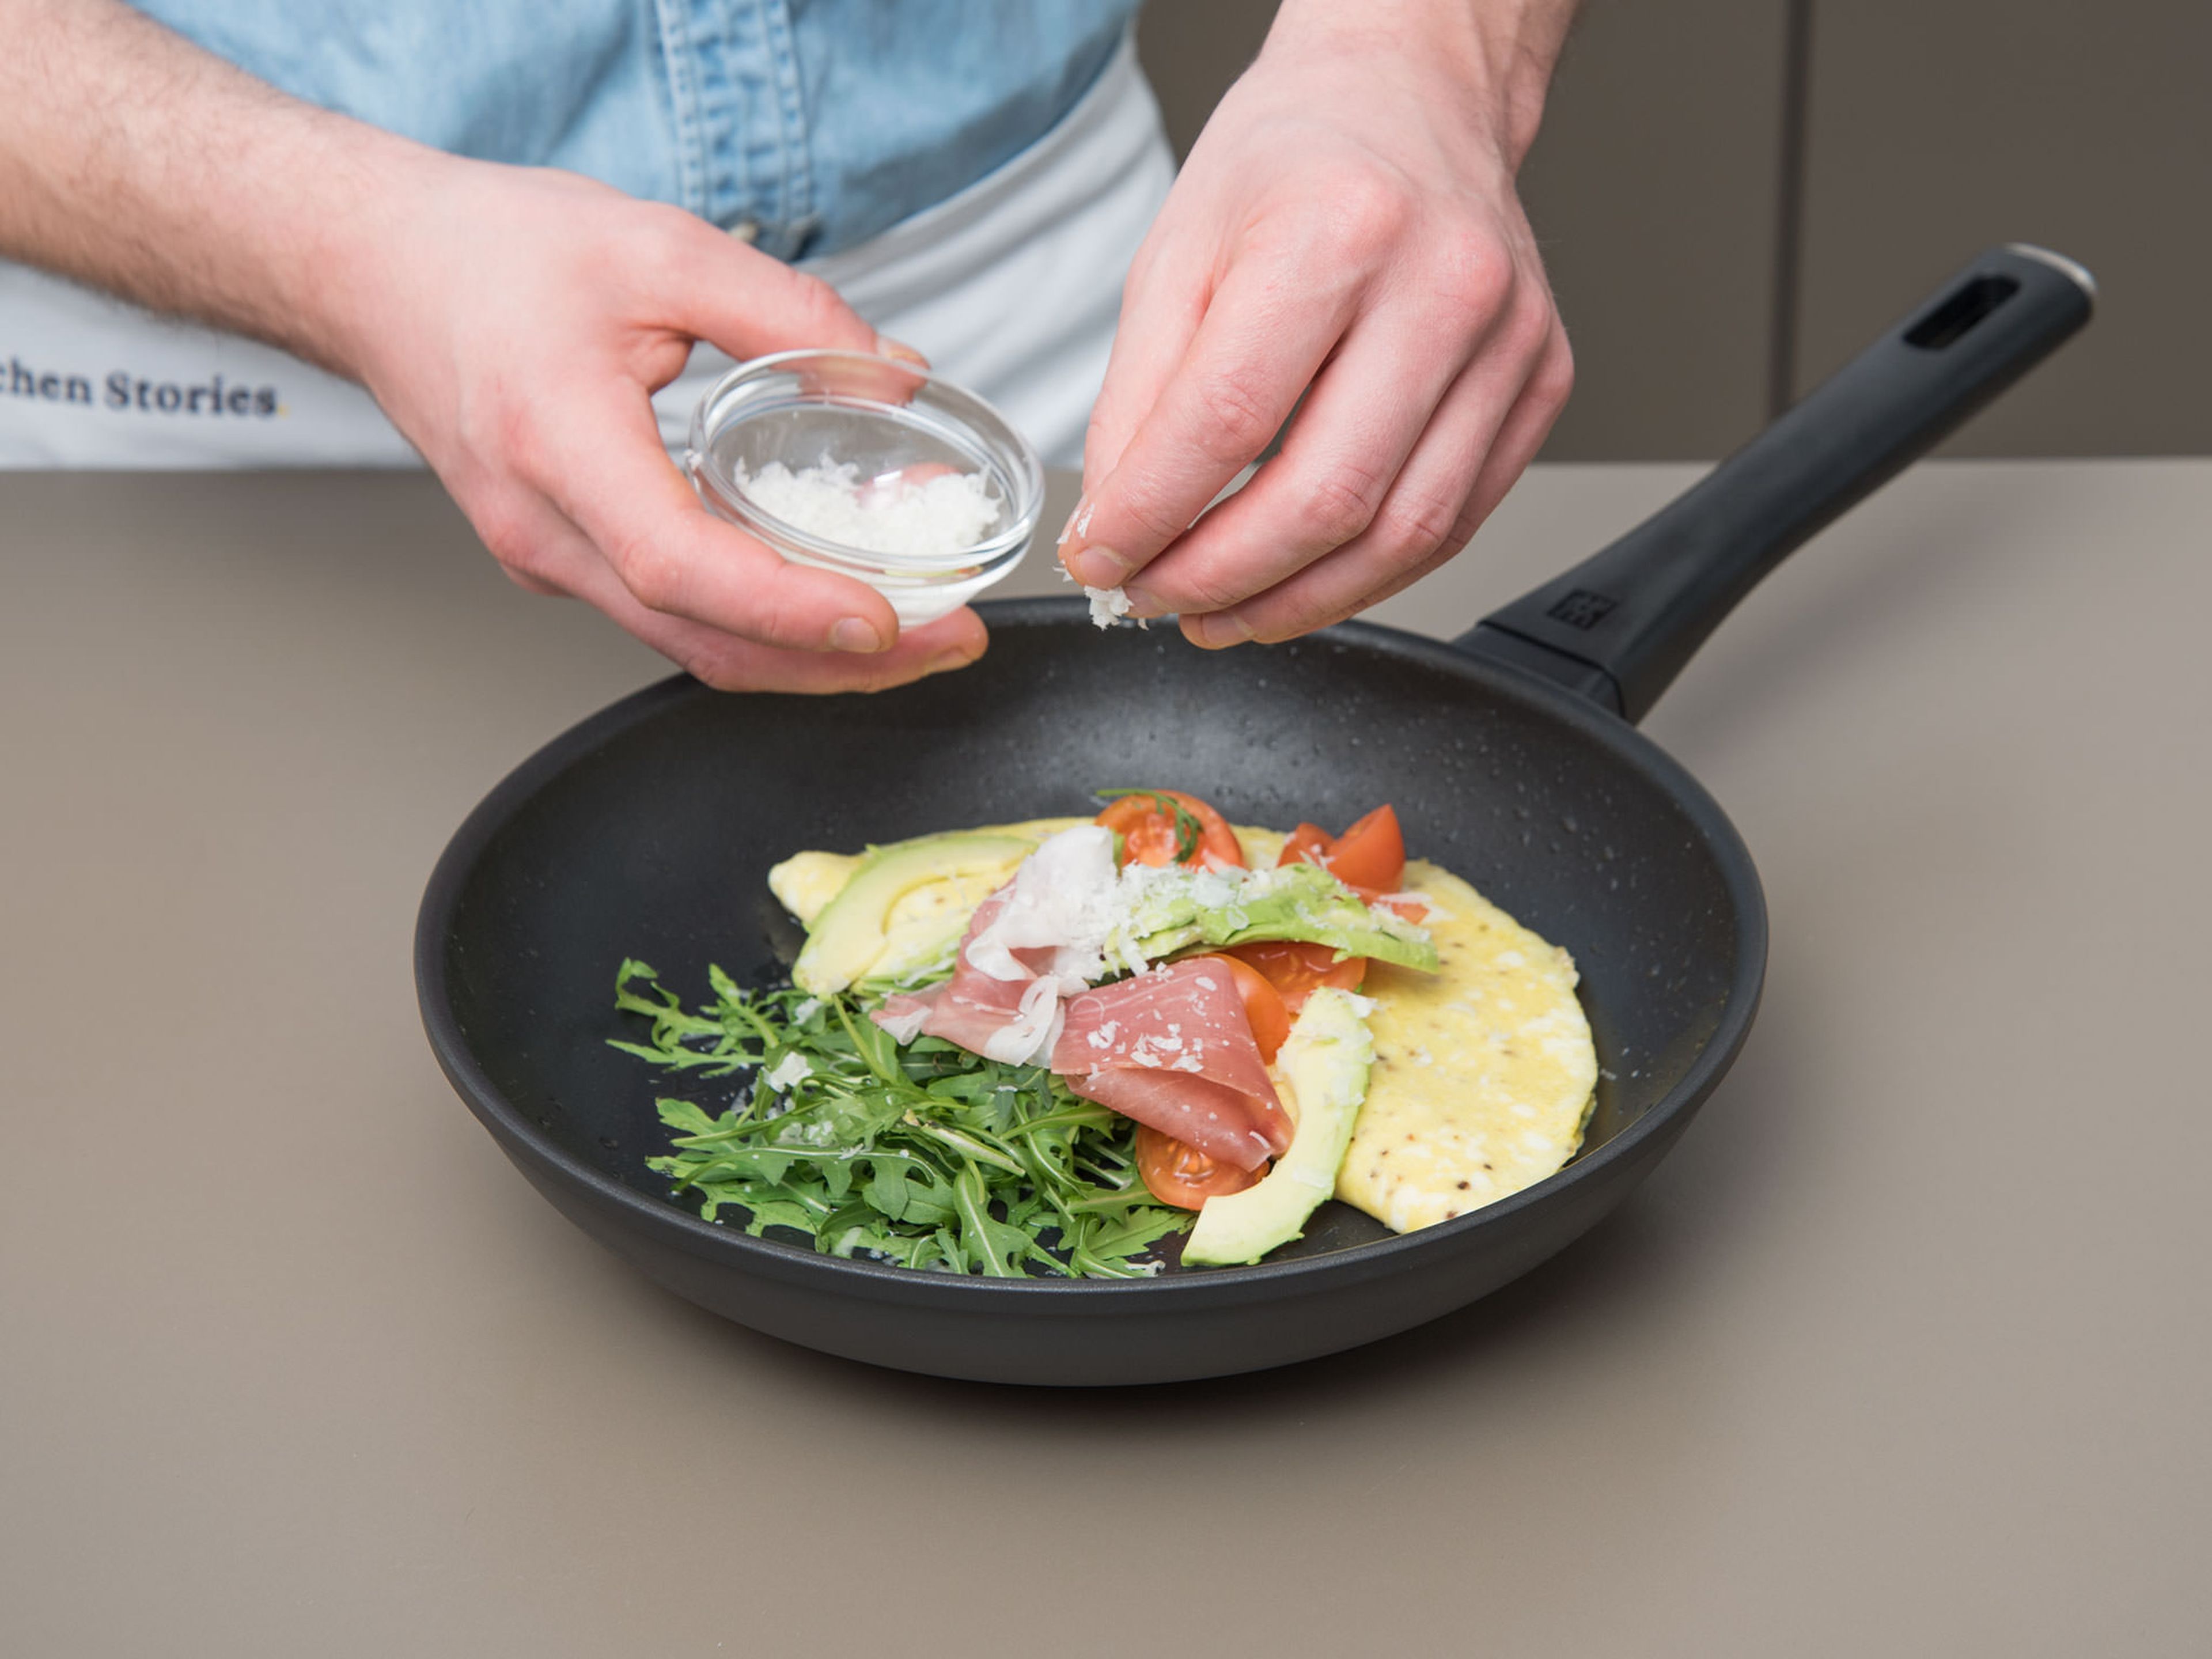 Pfanne vom Herd nehmen. Omelett mit Rucola, Tomaten, dem übrigen Prosciutto und Avocado anrichten. Mit Parmesan garnieren und sofort genießen!